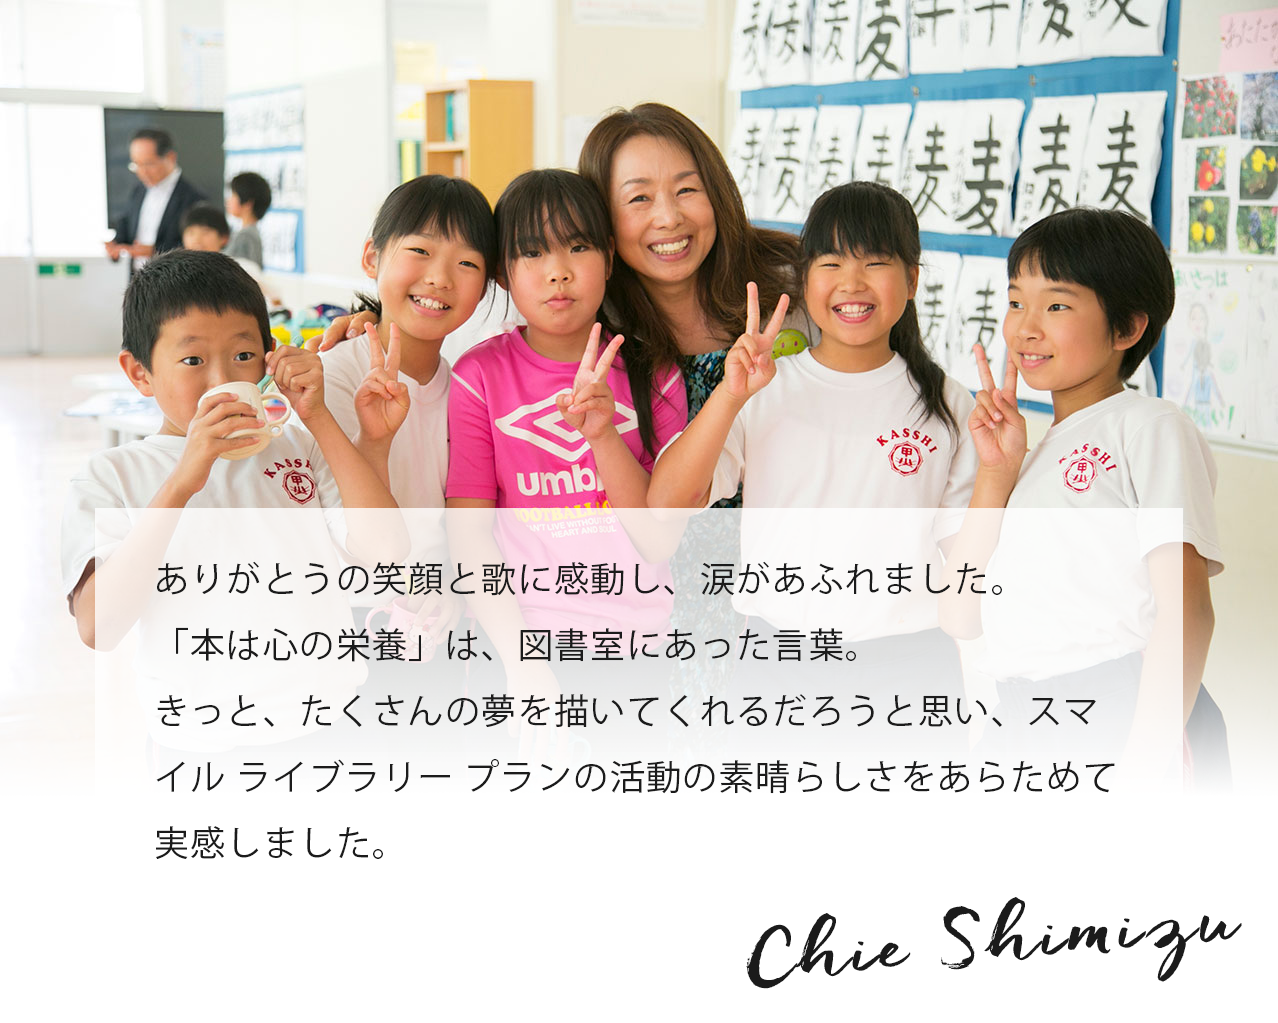 ありがとうの笑顔と歌に感動し、涙があふれました。「本は心の栄養」は、図書室にあった言葉。きっと、たくさんの夢を描いてくれるだろうと思い、スマイル ライブラリー プランの活動の素晴らしさをあらためて実感しました。 Chie Shimizu